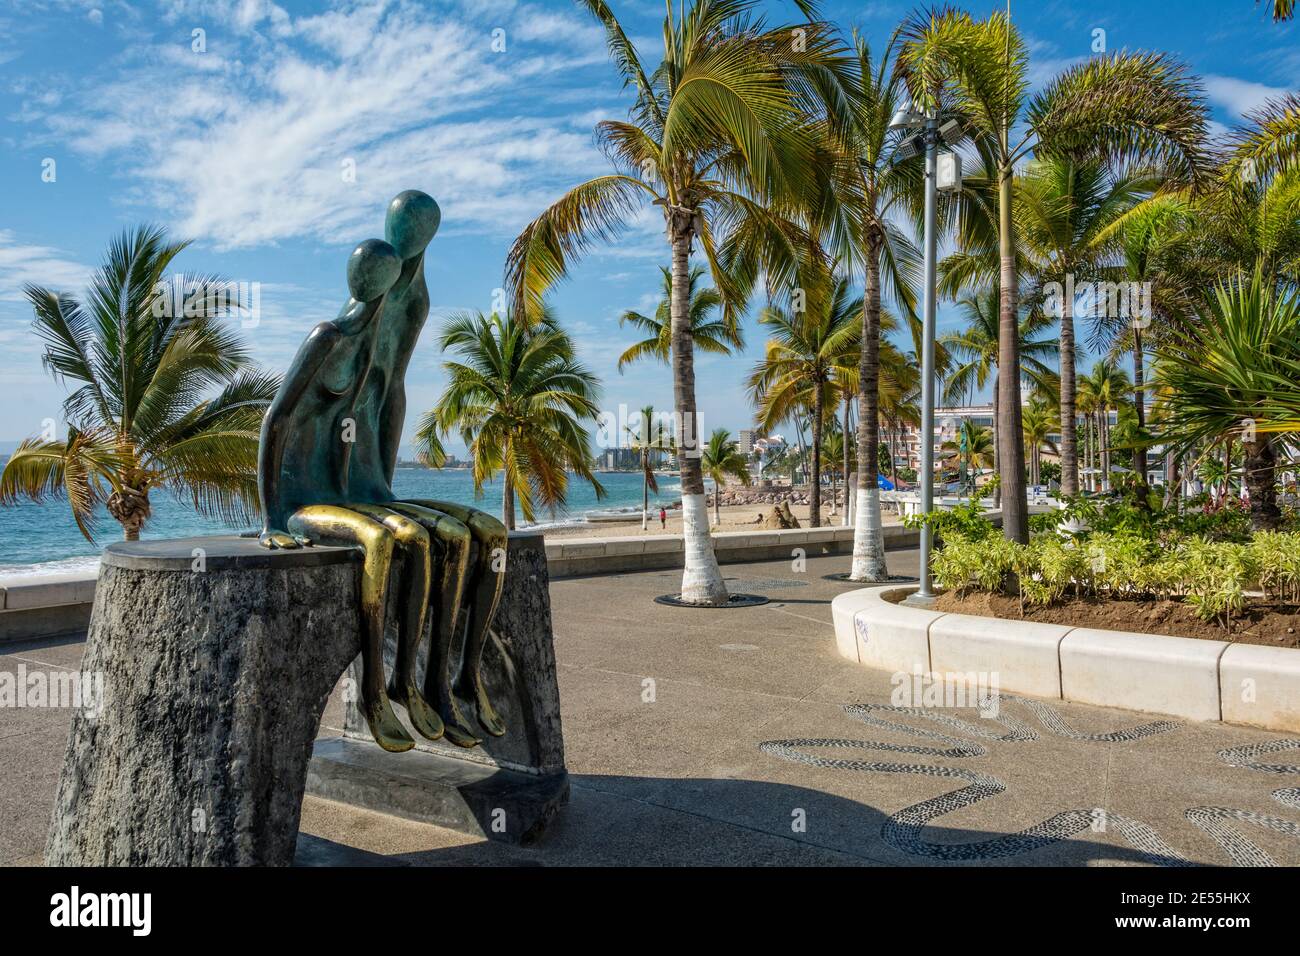 Skulptur "Nostalgie" des mexikanischen Künstlers Ramiz Barquet auf dem Malecon in Puerto Vallarta, Jalisco, Mexiko. Stockfoto